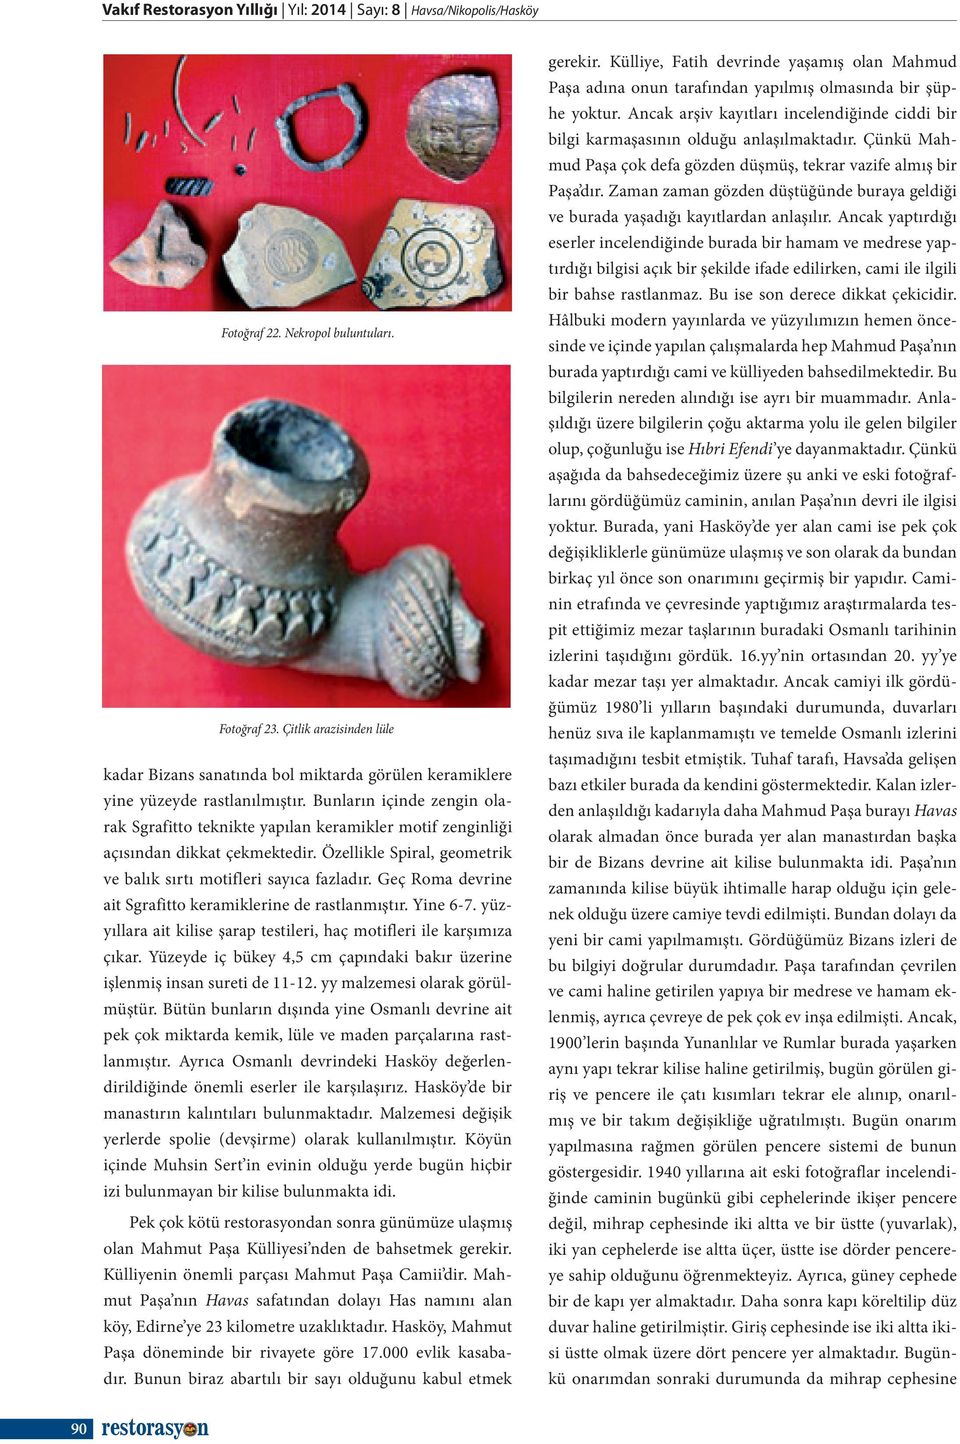 Bunların içinde zengin olarak Sgrafitto teknikte yapılan keramikler motif zenginliği açısından dikkat çekmektedir. Özellikle Spiral, geometrik ve balık sırtı motifleri sayıca fazladır.